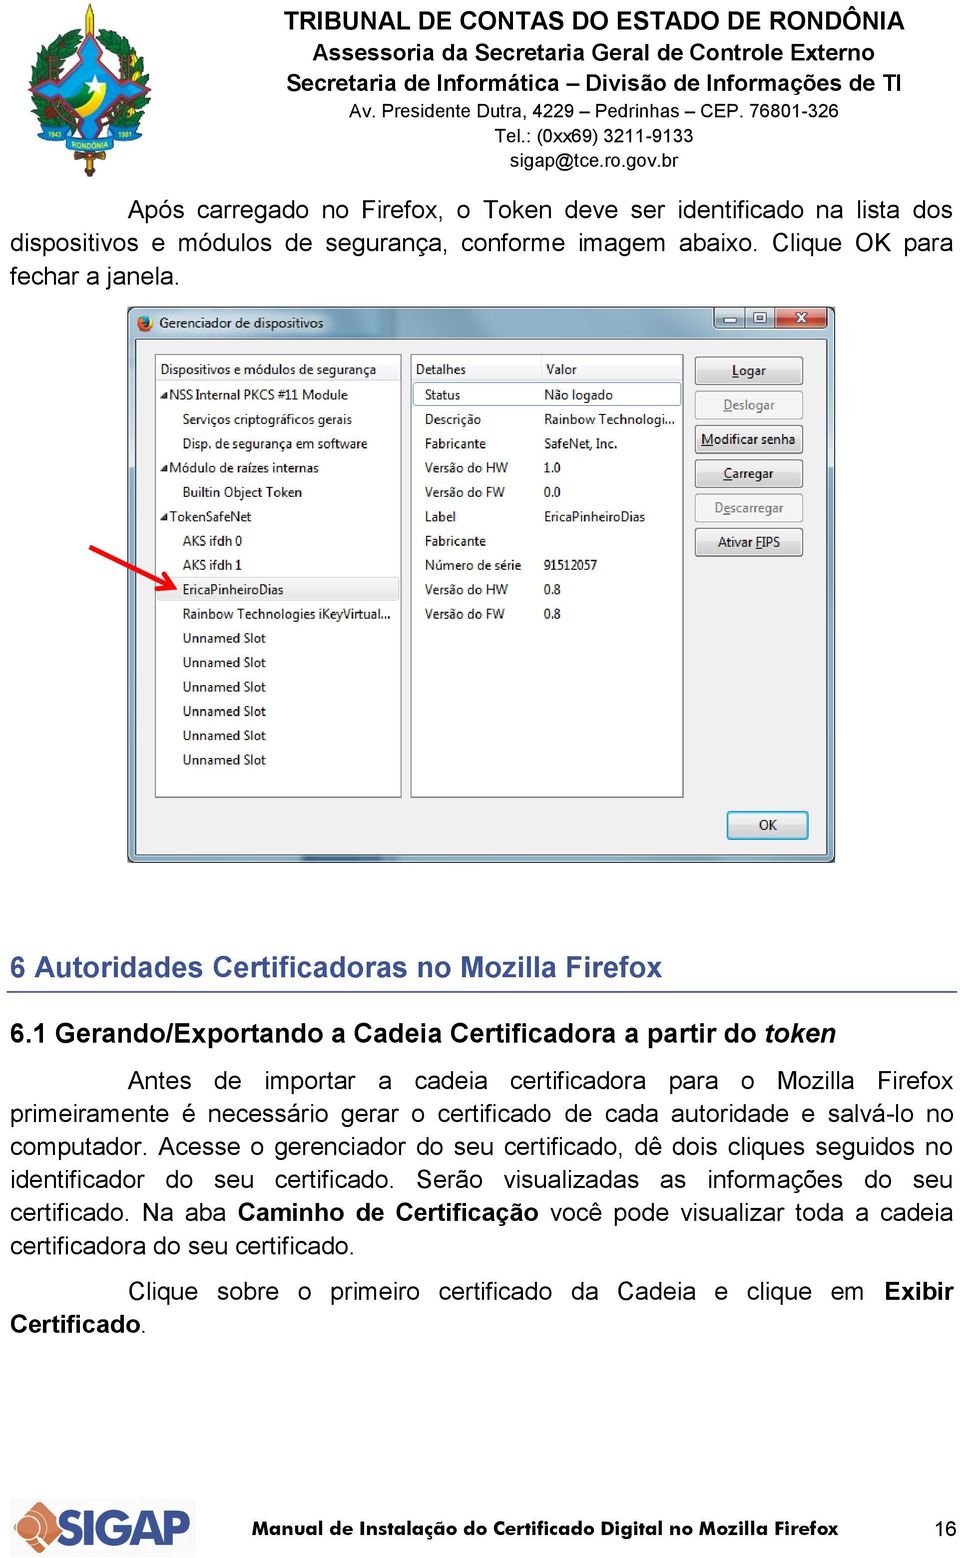 1 Gerando/Exportando a Cadeia Certificadora a partir do token Antes de importar a cadeia certificadora para o Mozilla Firefox primeiramente é necessário gerar o certificado de cada autoridade e